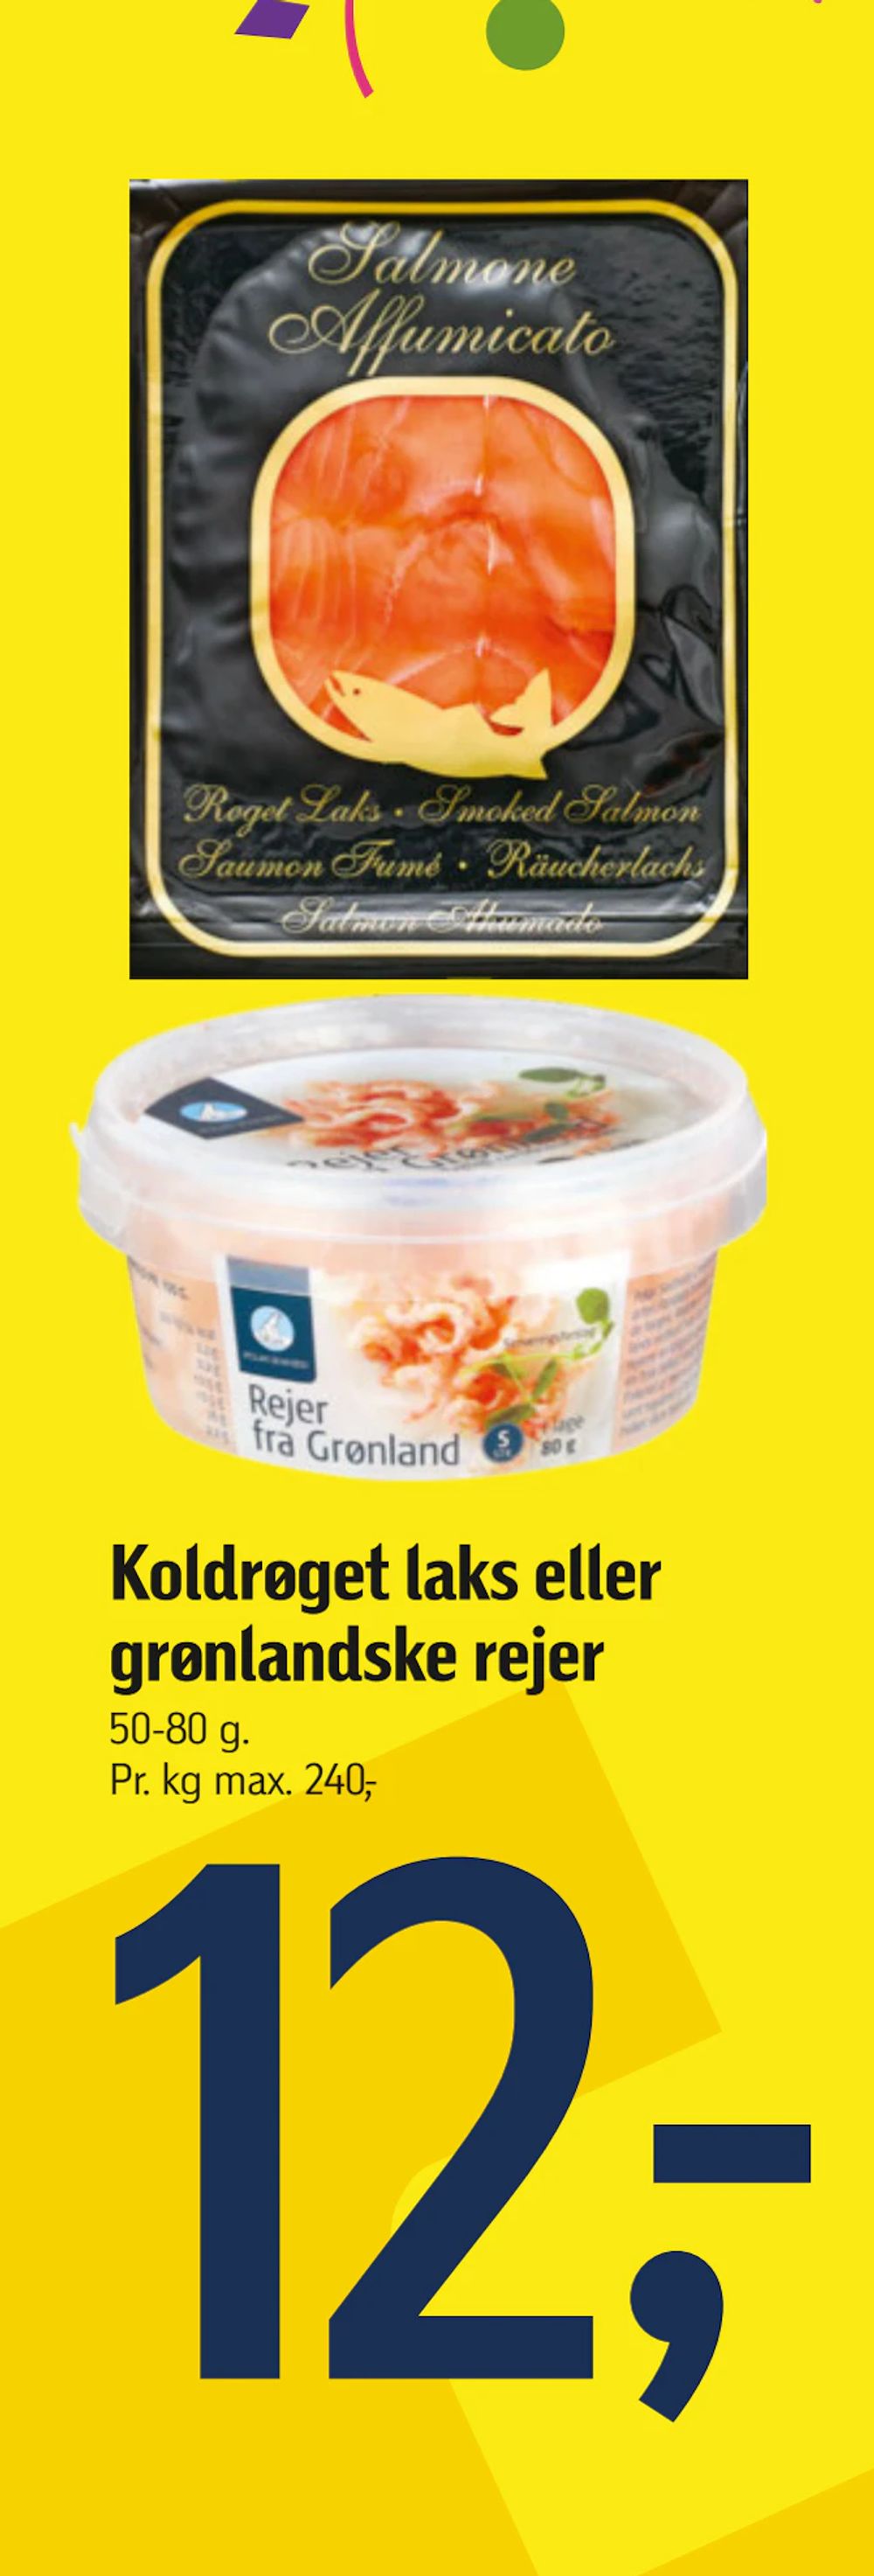 Tilbud på Koldrøget laks eller grønlandske rejer fra føtex til 12 kr.